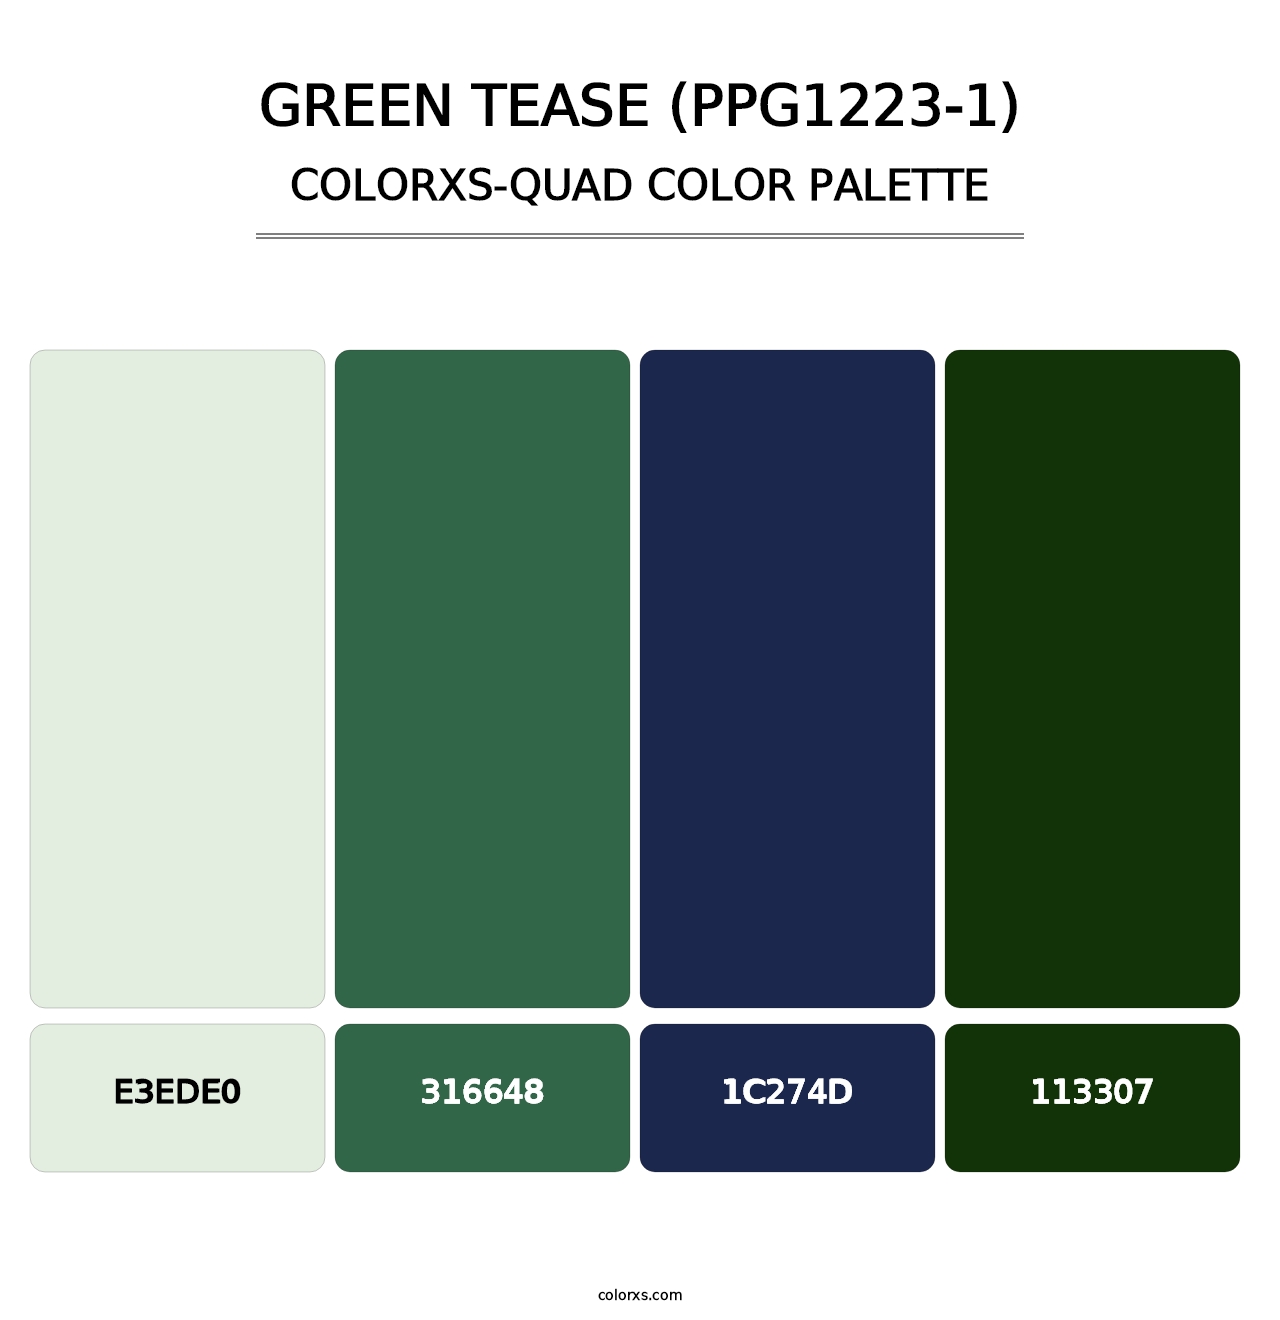 Green Tease (PPG1223-1) - Colorxs Quad Palette